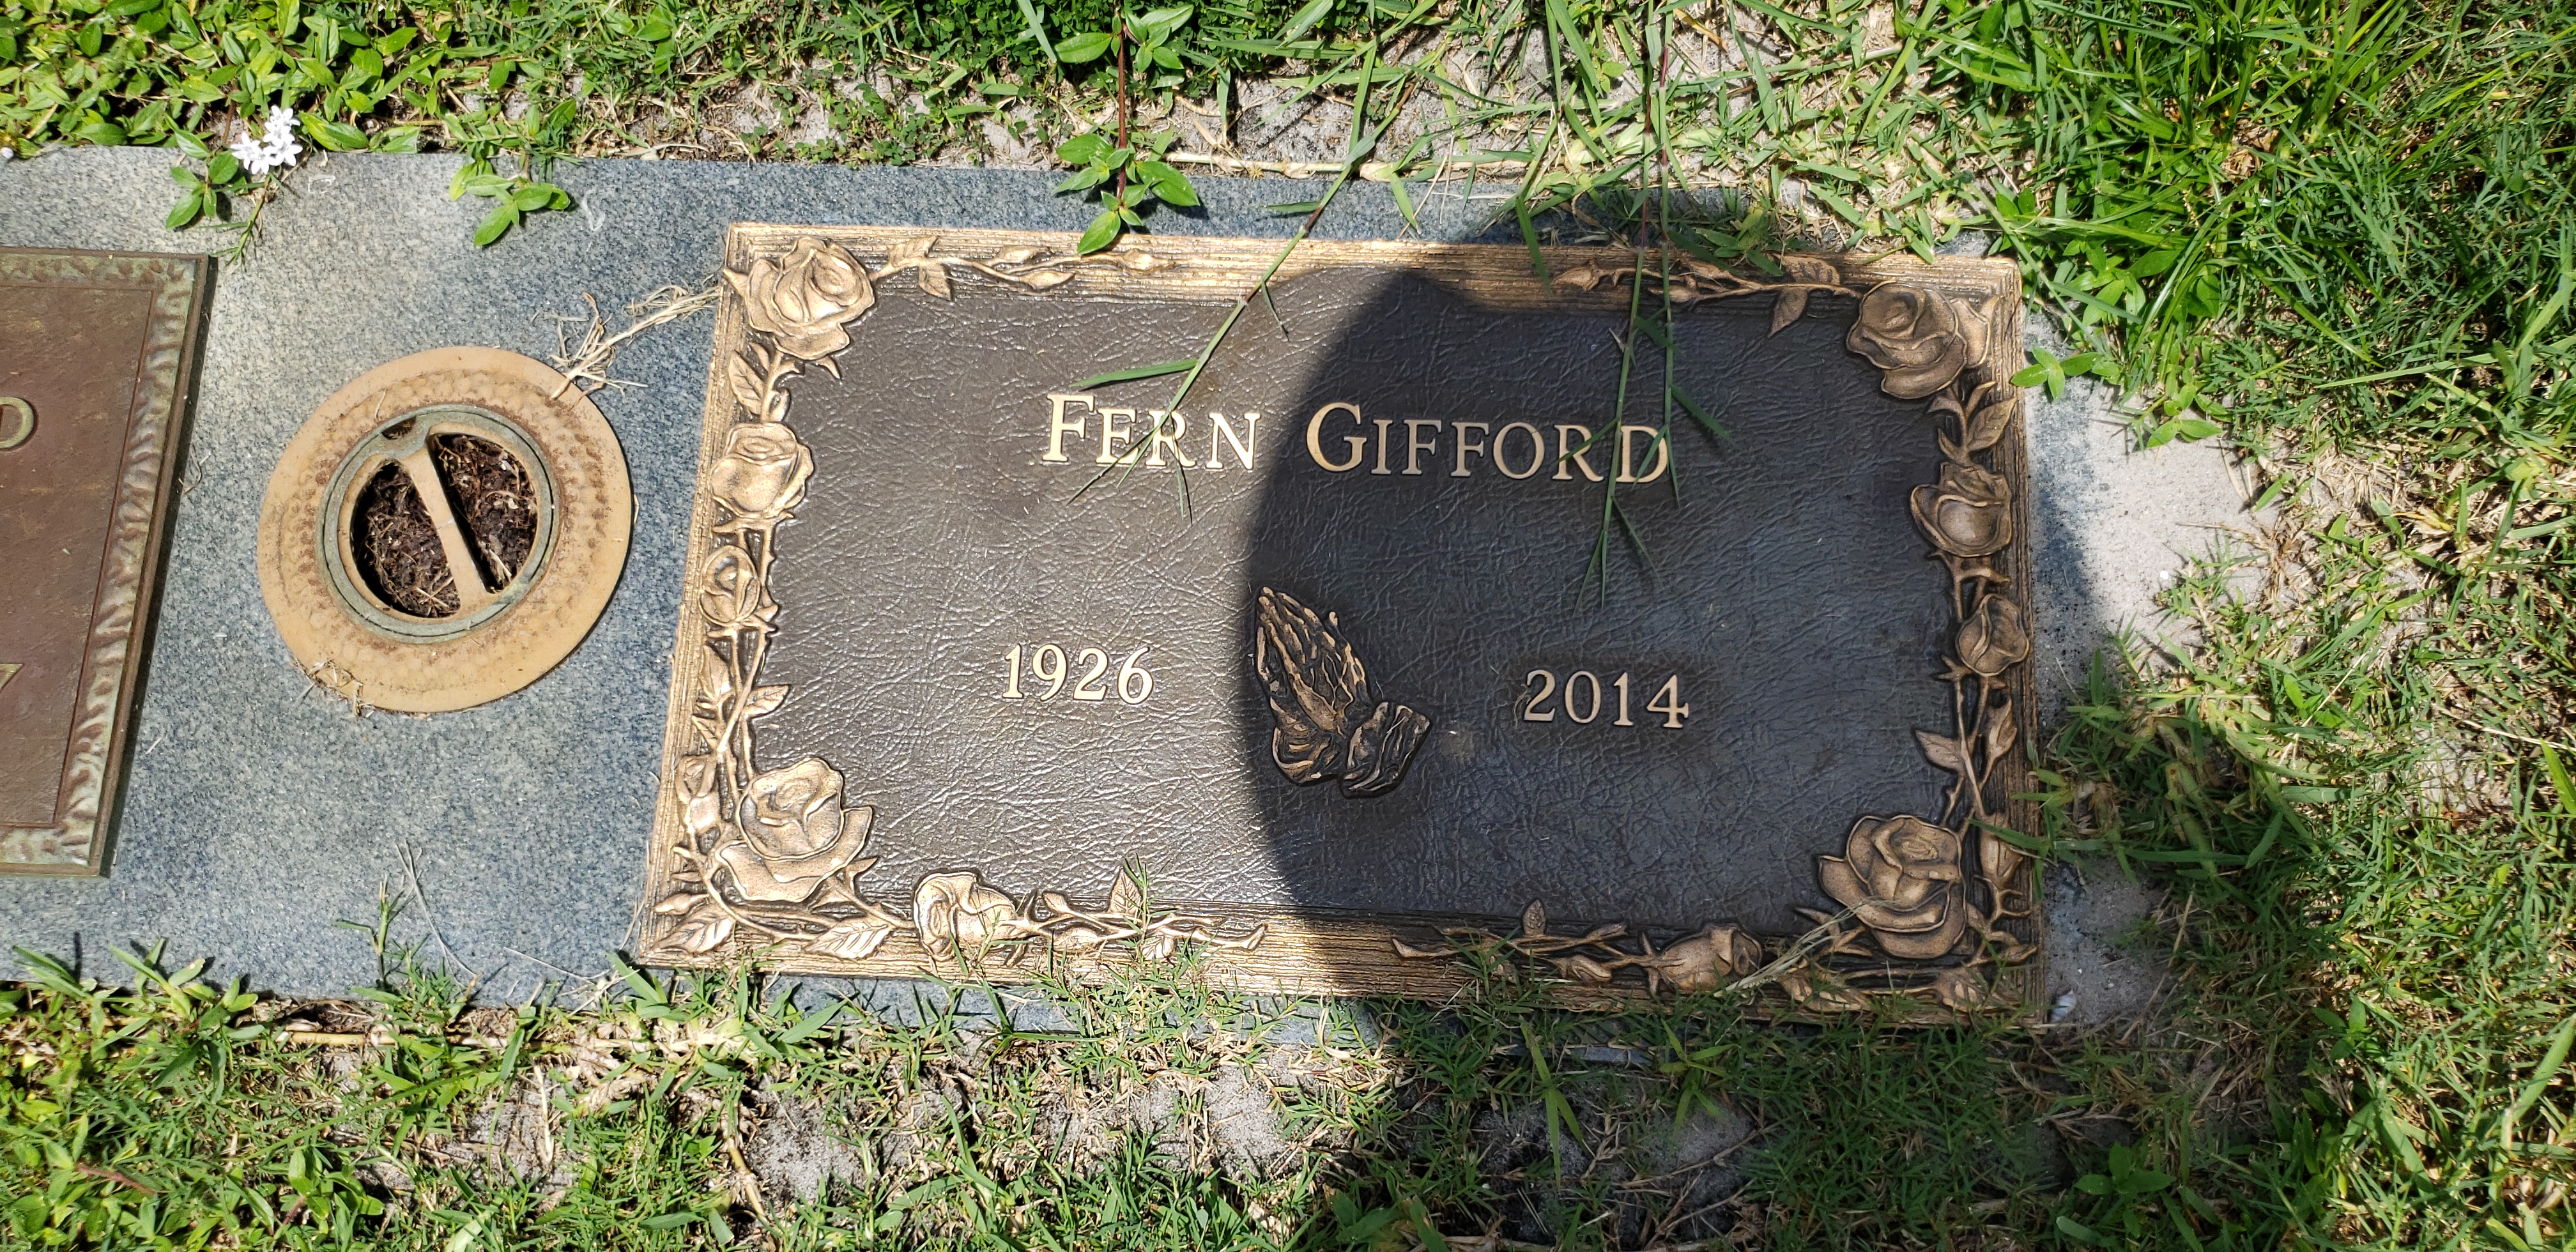 Fern Gifford